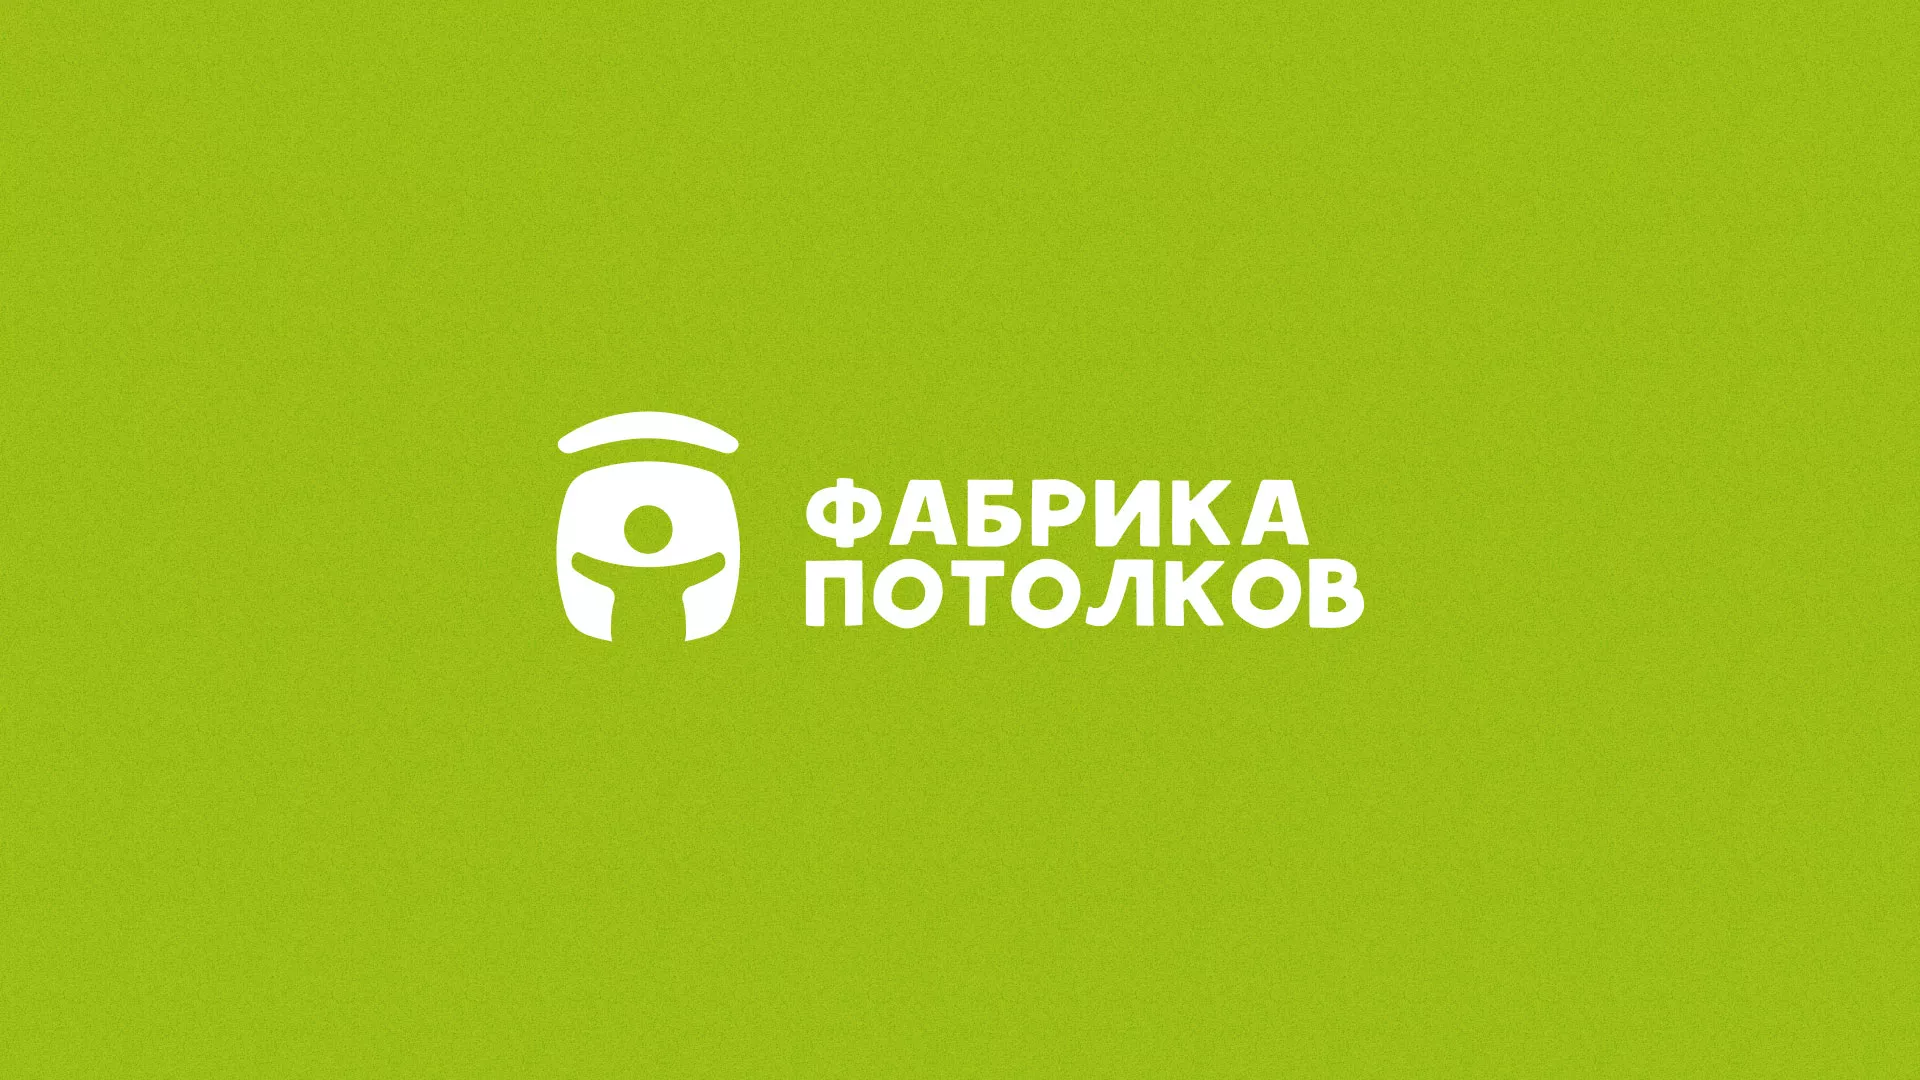 Разработка логотипа для производства натяжных потолков в Твери